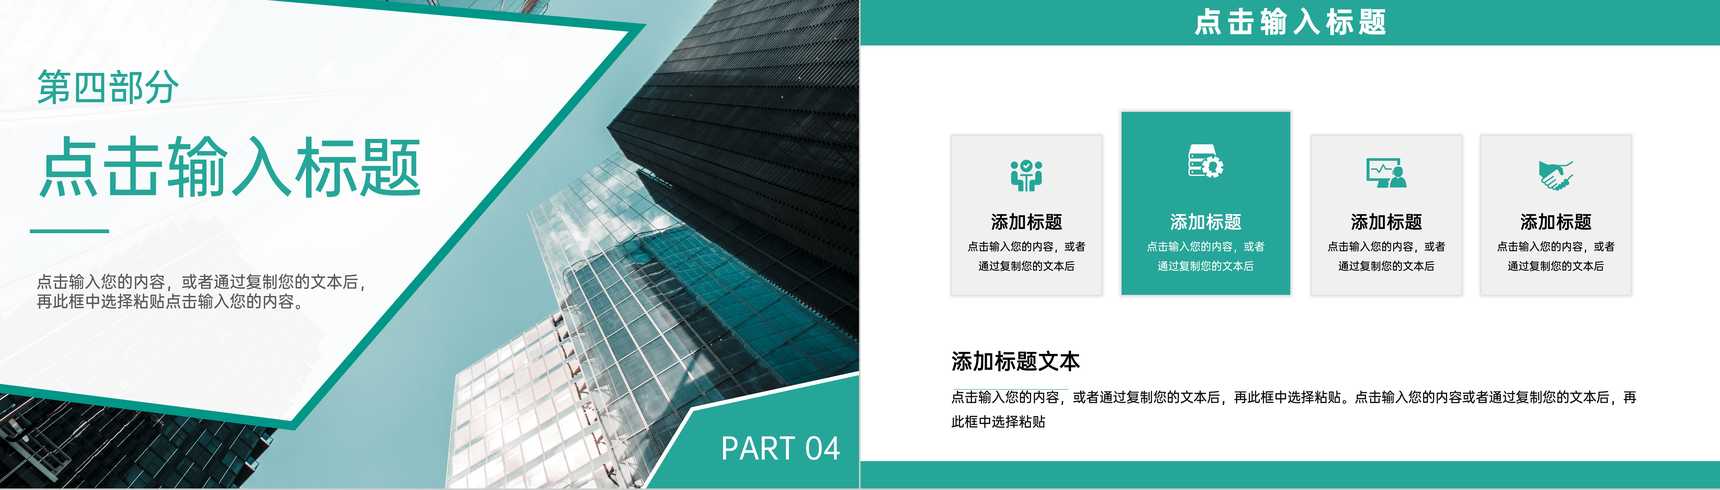 绿色商务风职业学校招生简介专业技术培养PPT模板-9